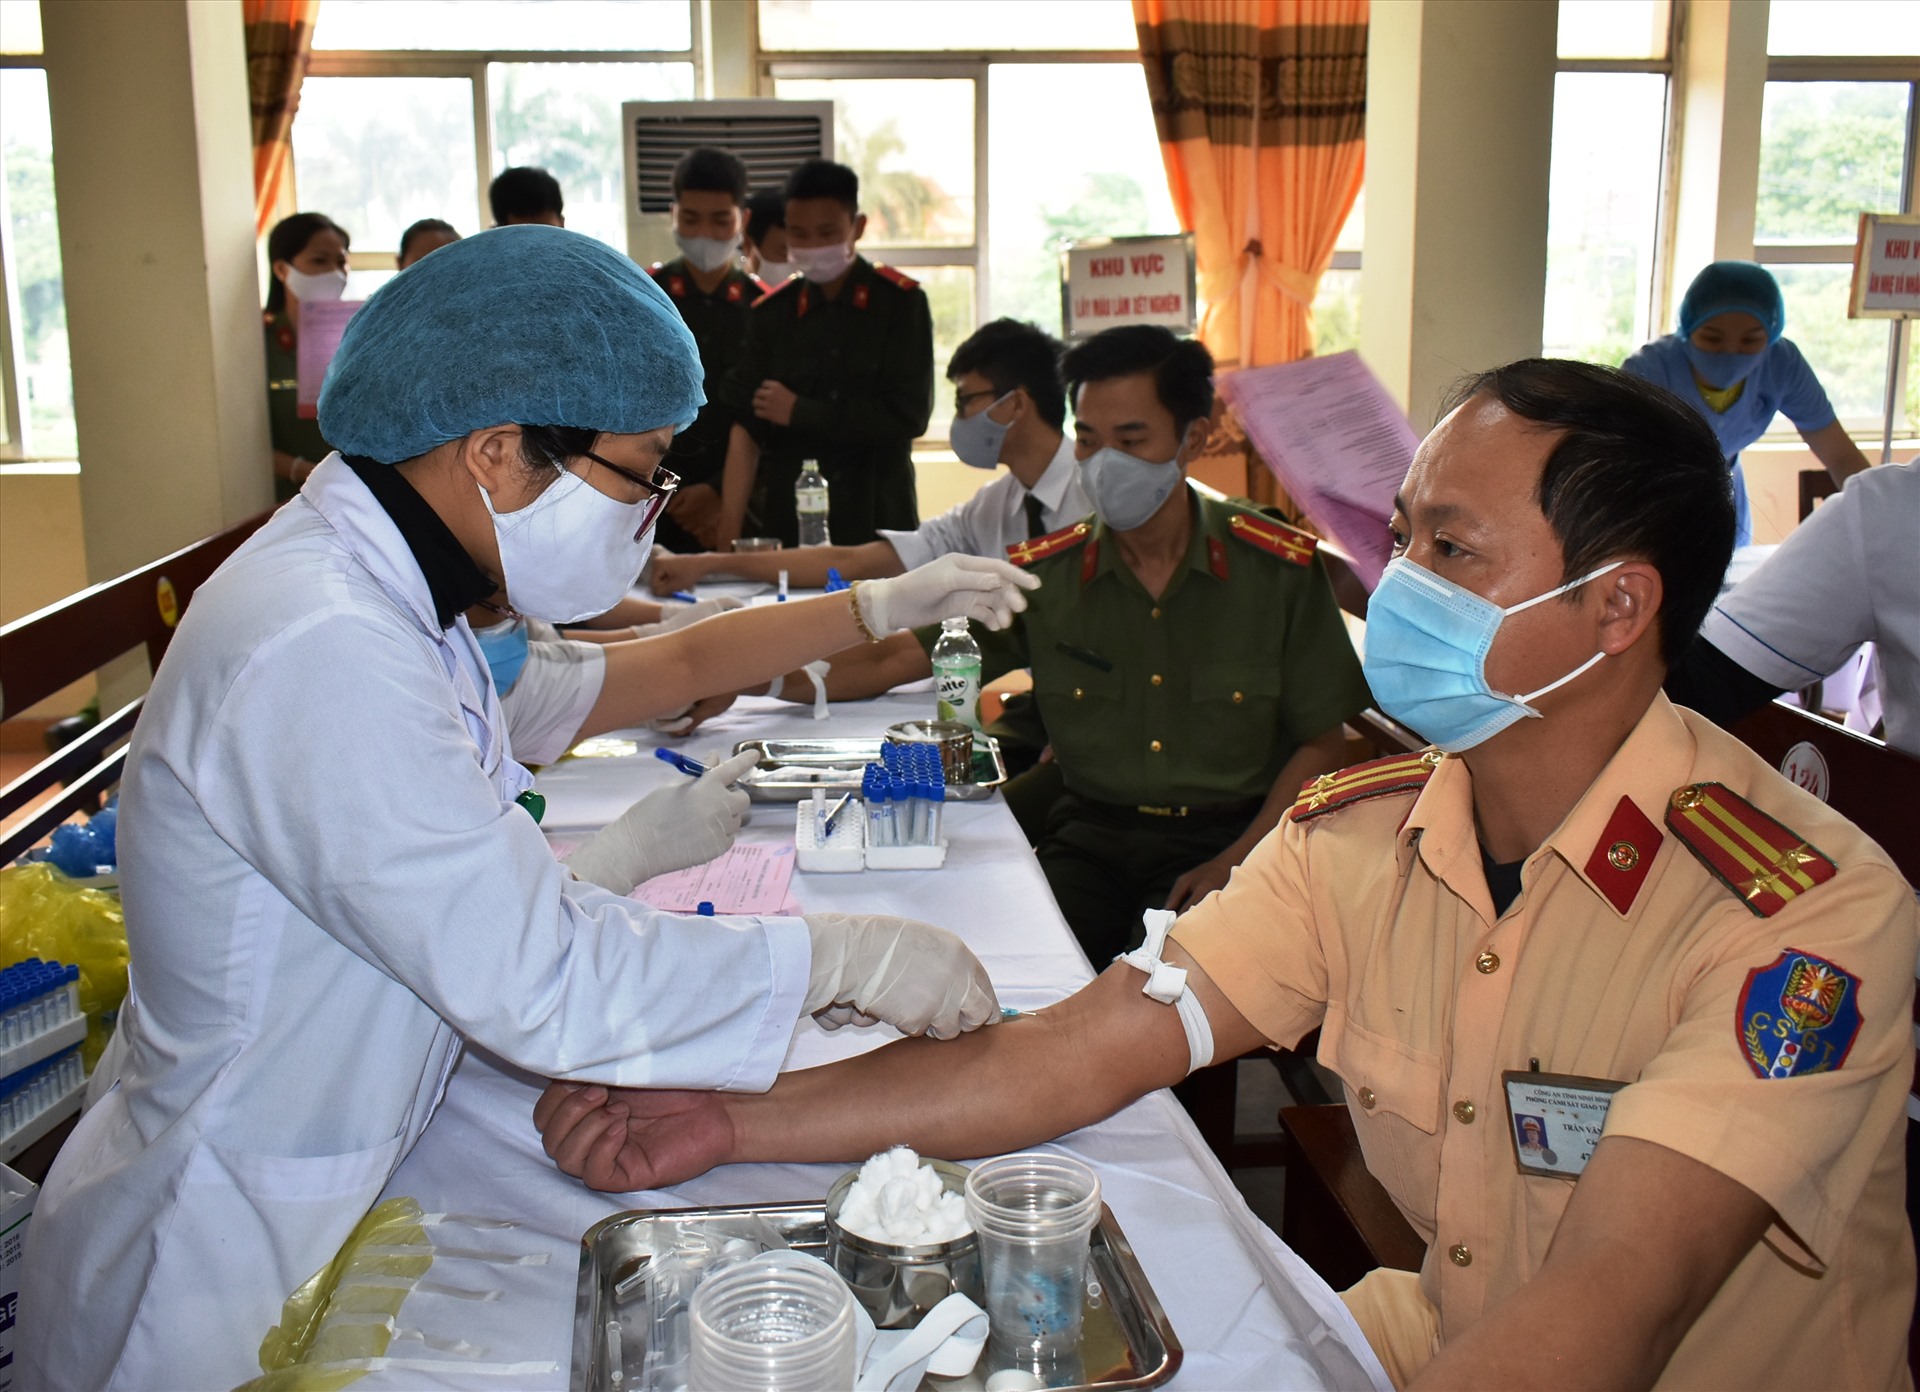 100% cán bộ chiến sĩ Công an tỉnh Ninh Bình đăng ký tham gia hiến máu tỉnh Nguyện. Ảnh: NT